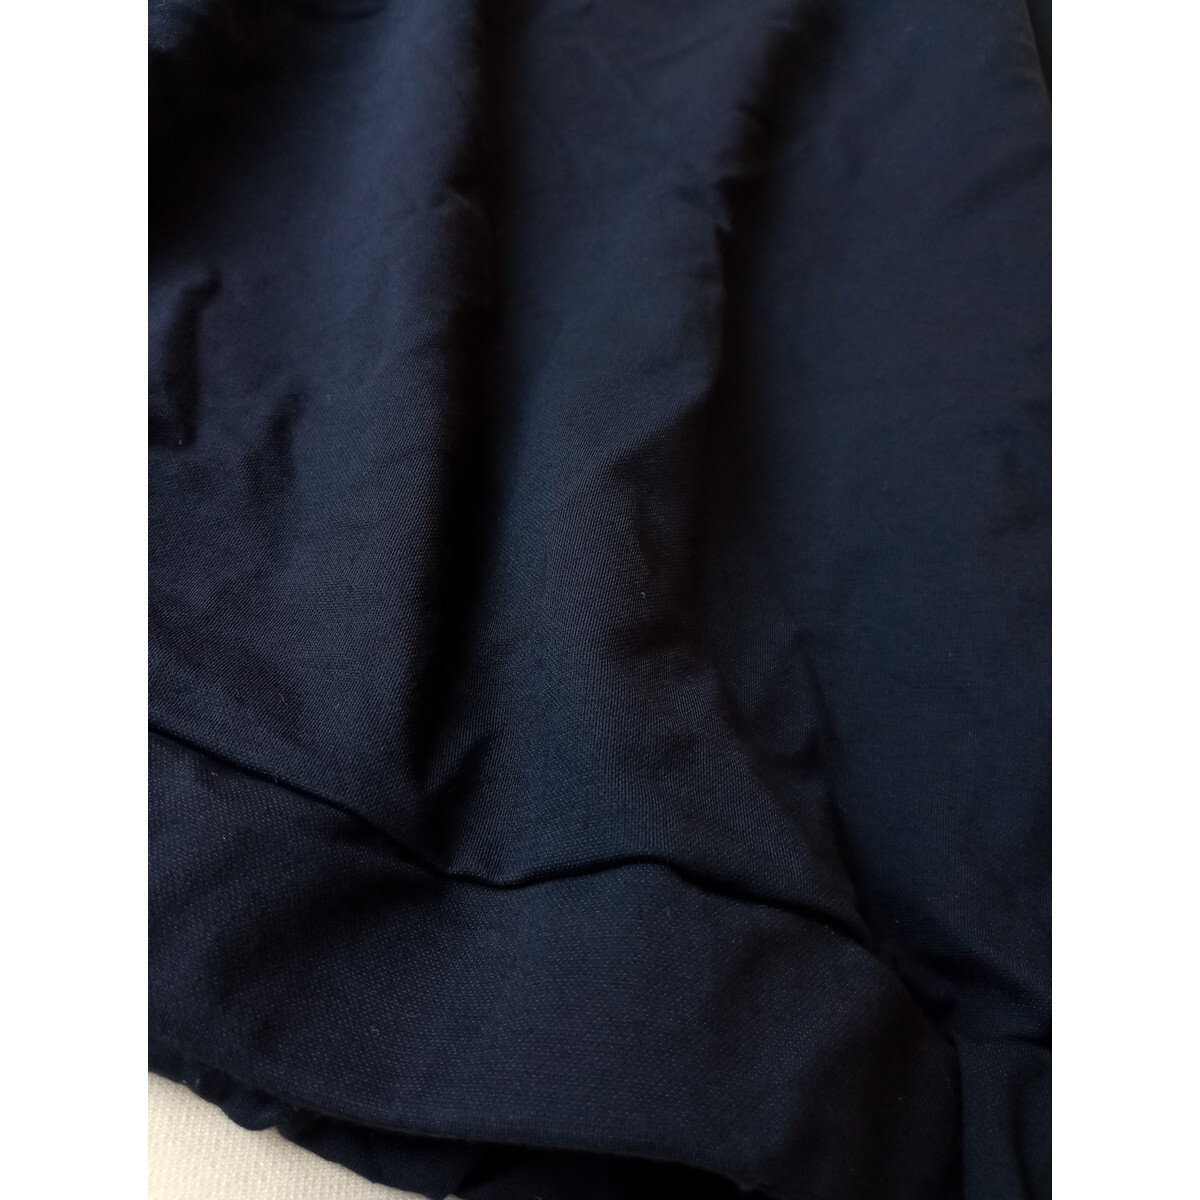 antilia アンティリア「ワードローブにわたしを新発見。」半袖 裾ゴム ブラウス プルオーバー ネイビー (54K+8393)の画像3